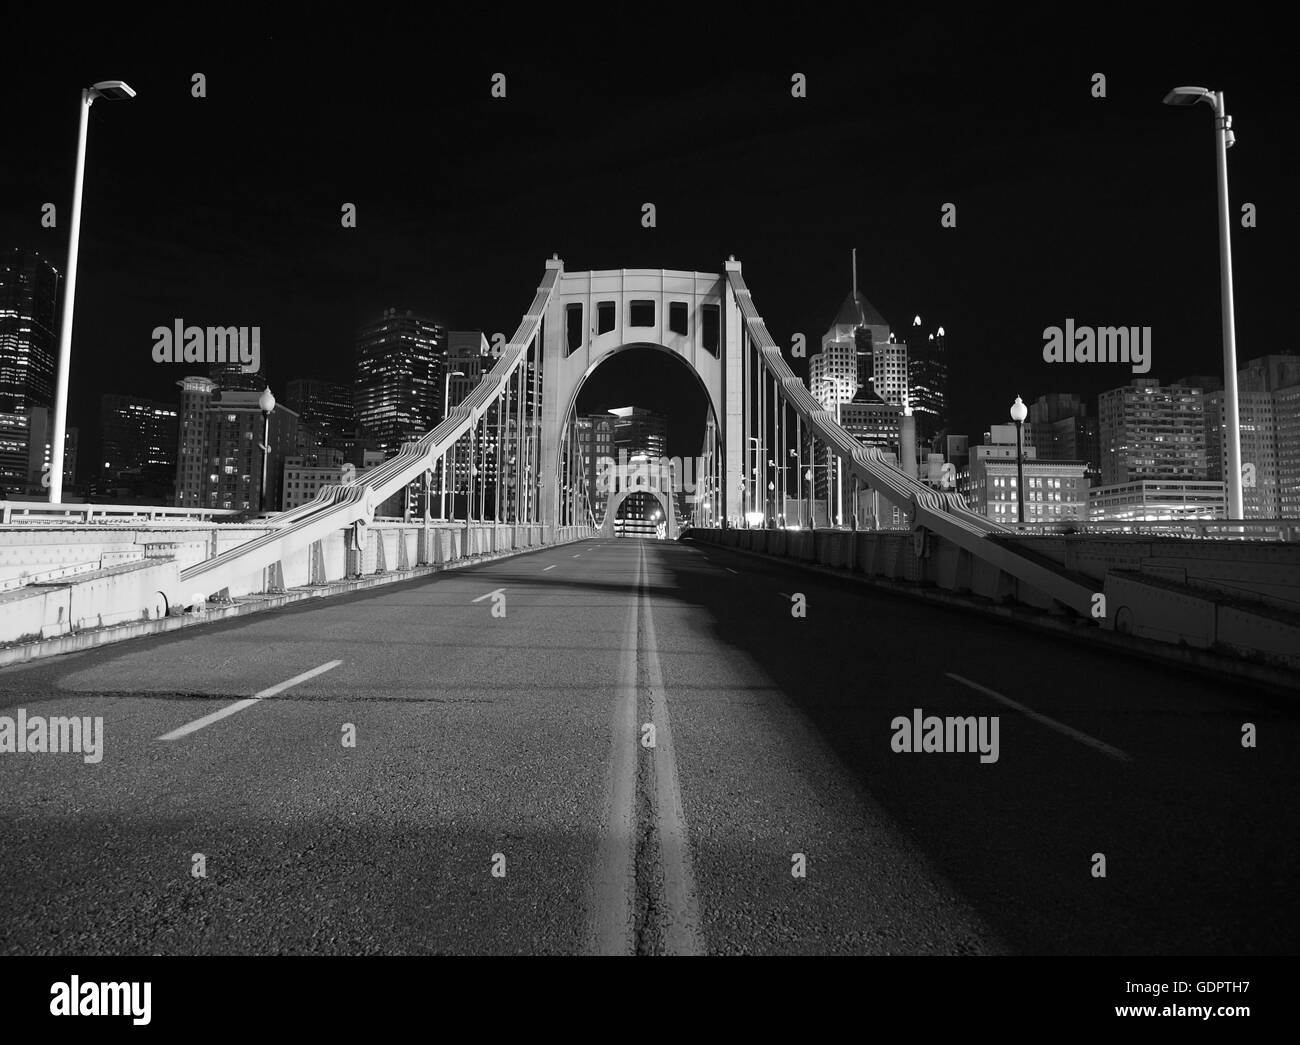 Noir et blanc sur pont menant au centre-ville de Pittsburgh. Éclairé par la lueur des lumières du stade de base-ball. Banque D'Images